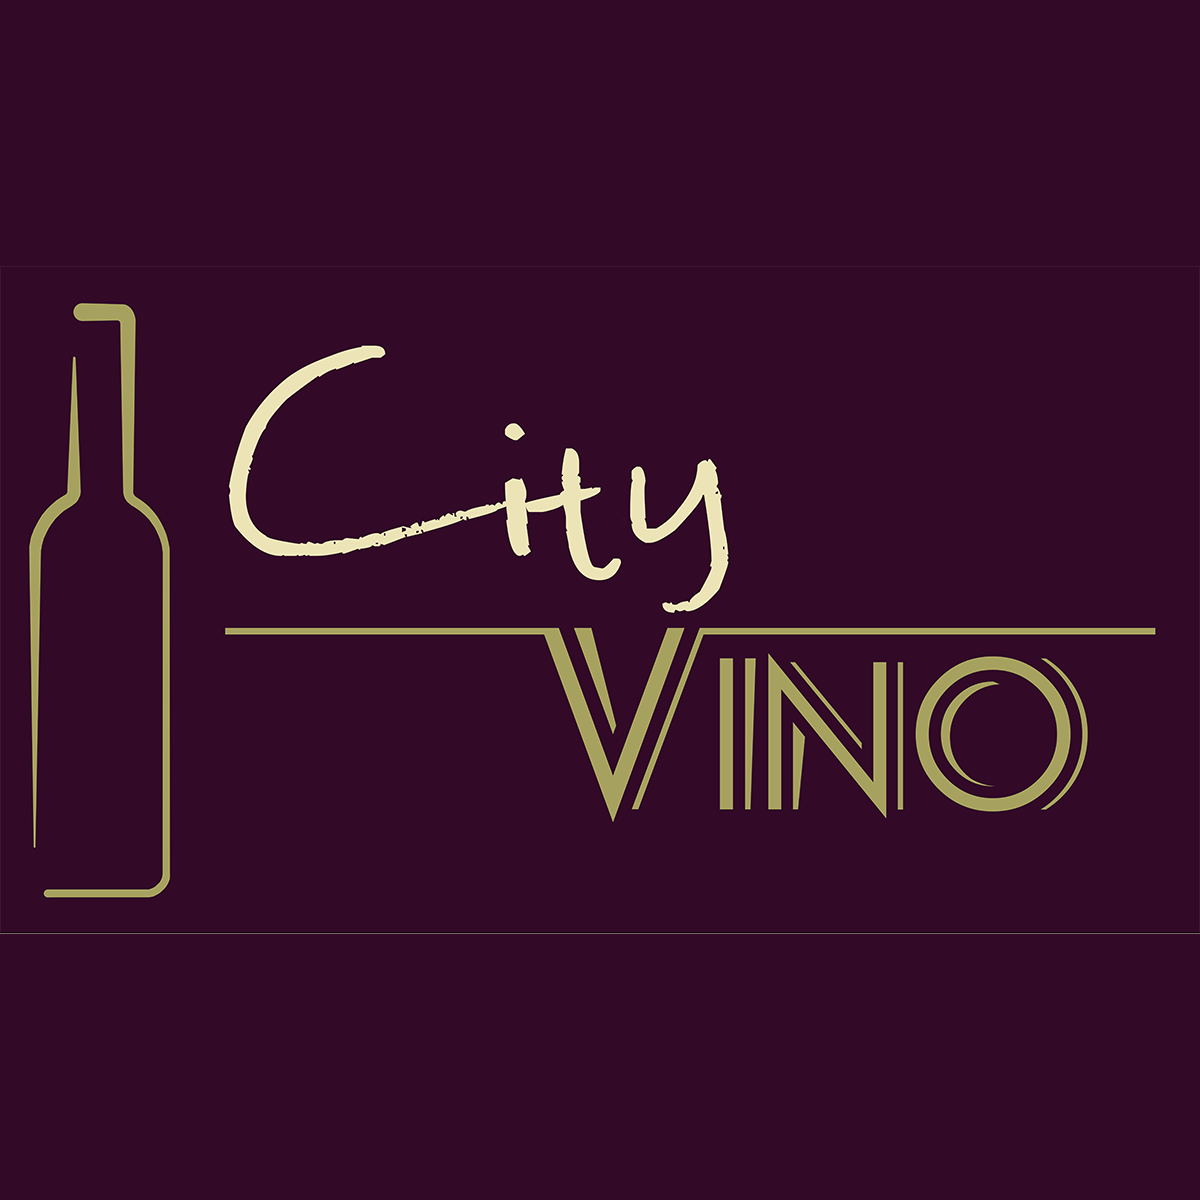 - City White Vino, Wine